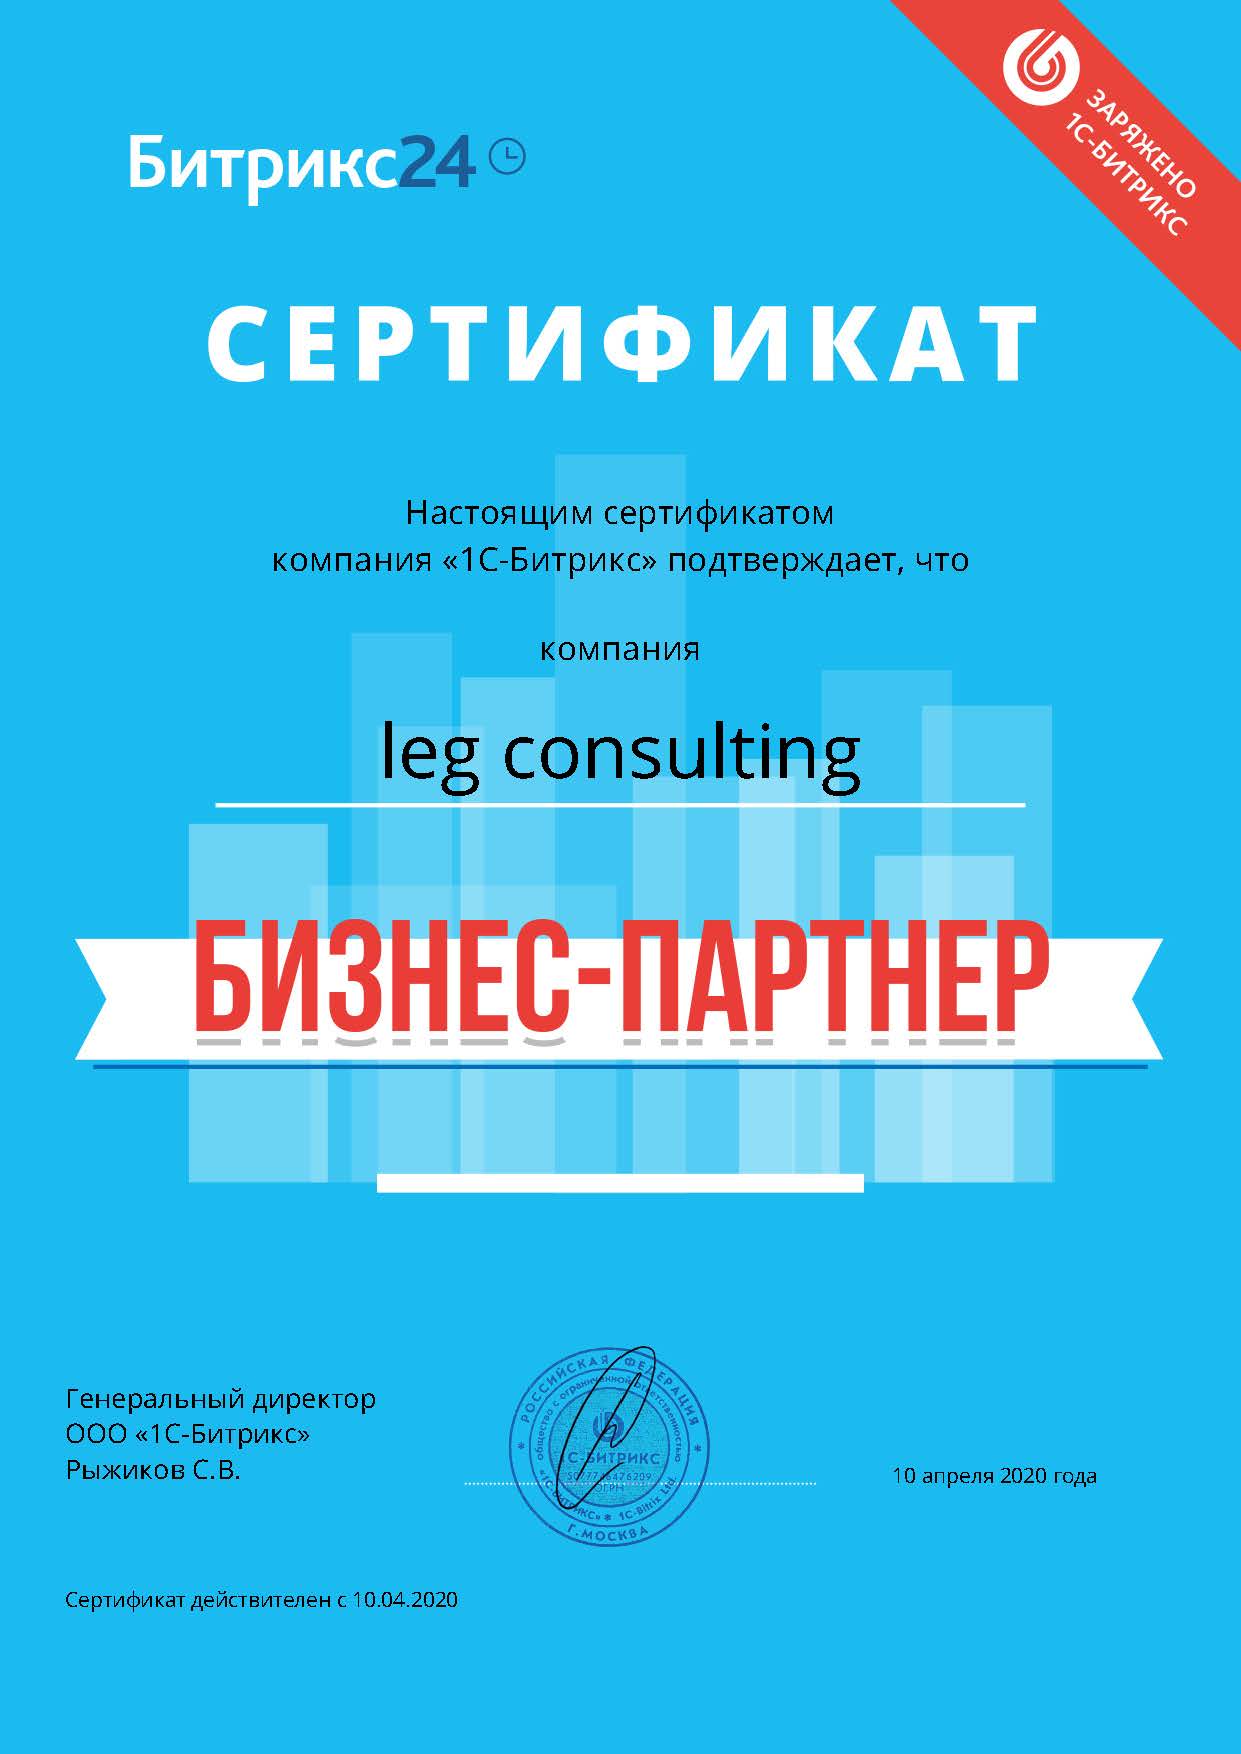 Сертификат бизнес-партнёра Битрикс24